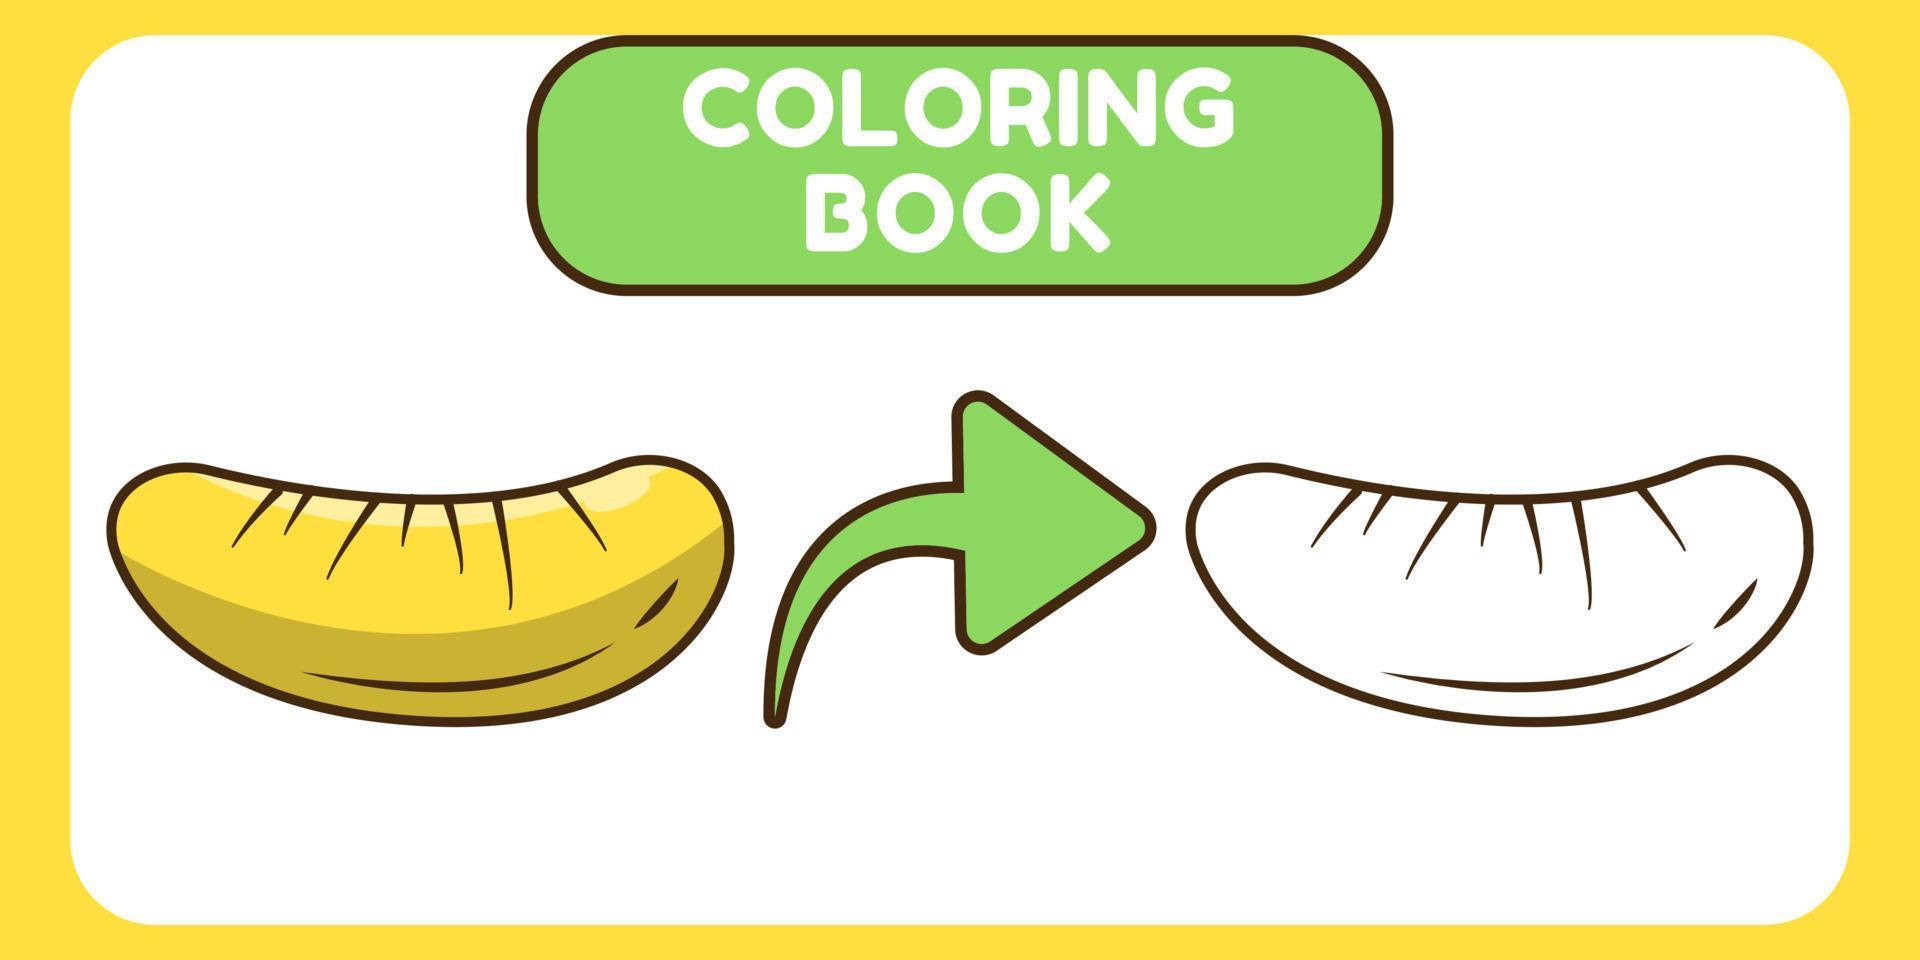 niedliches durian-handgezeichnetes cartoon-doodle-malbuch für kinder vektor